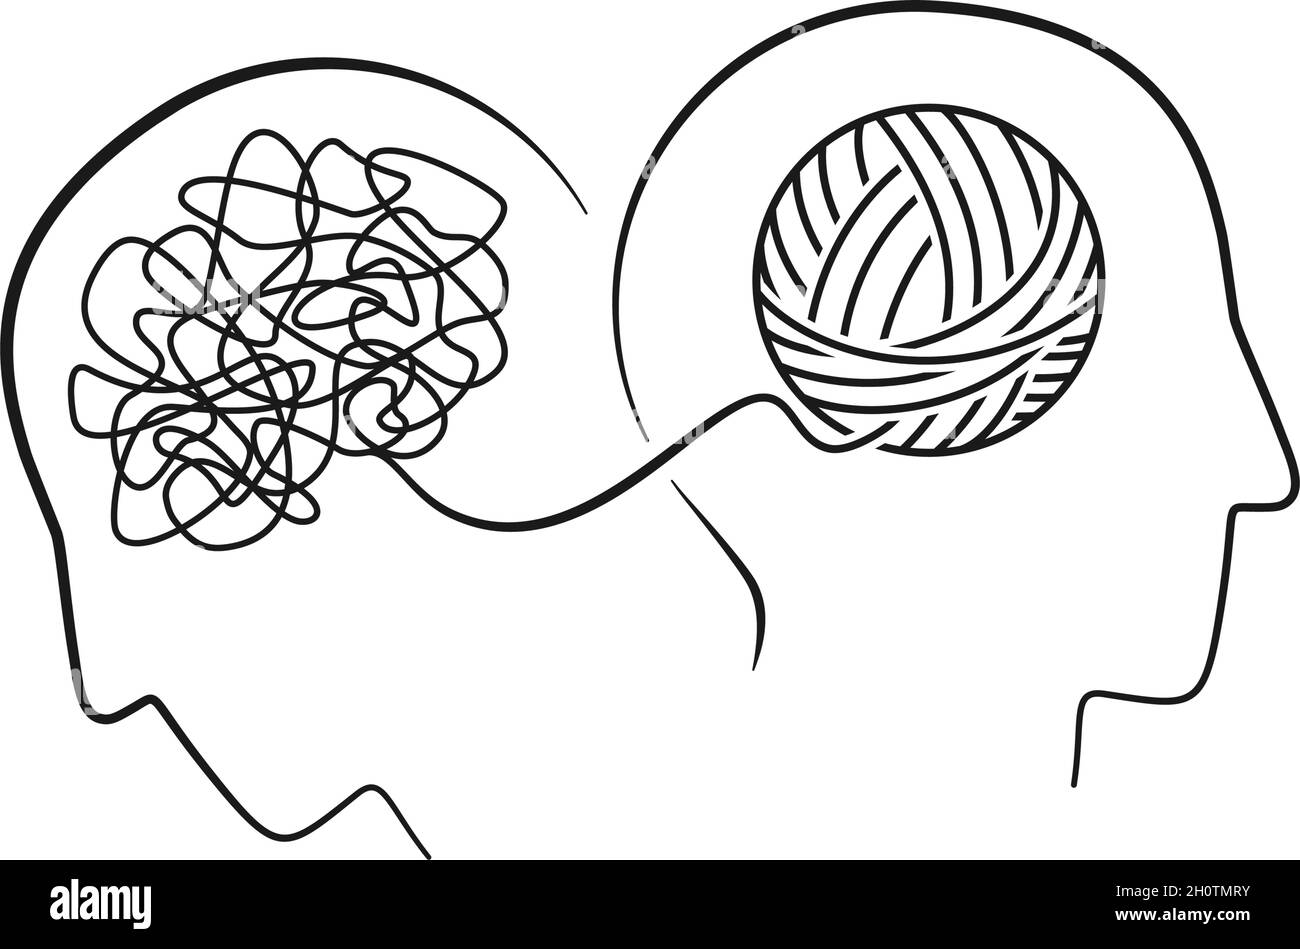 Concetto di salute mentale di due teste con cervello come linea continua nell'illustrazione vettoriale Illustrazione Vettoriale